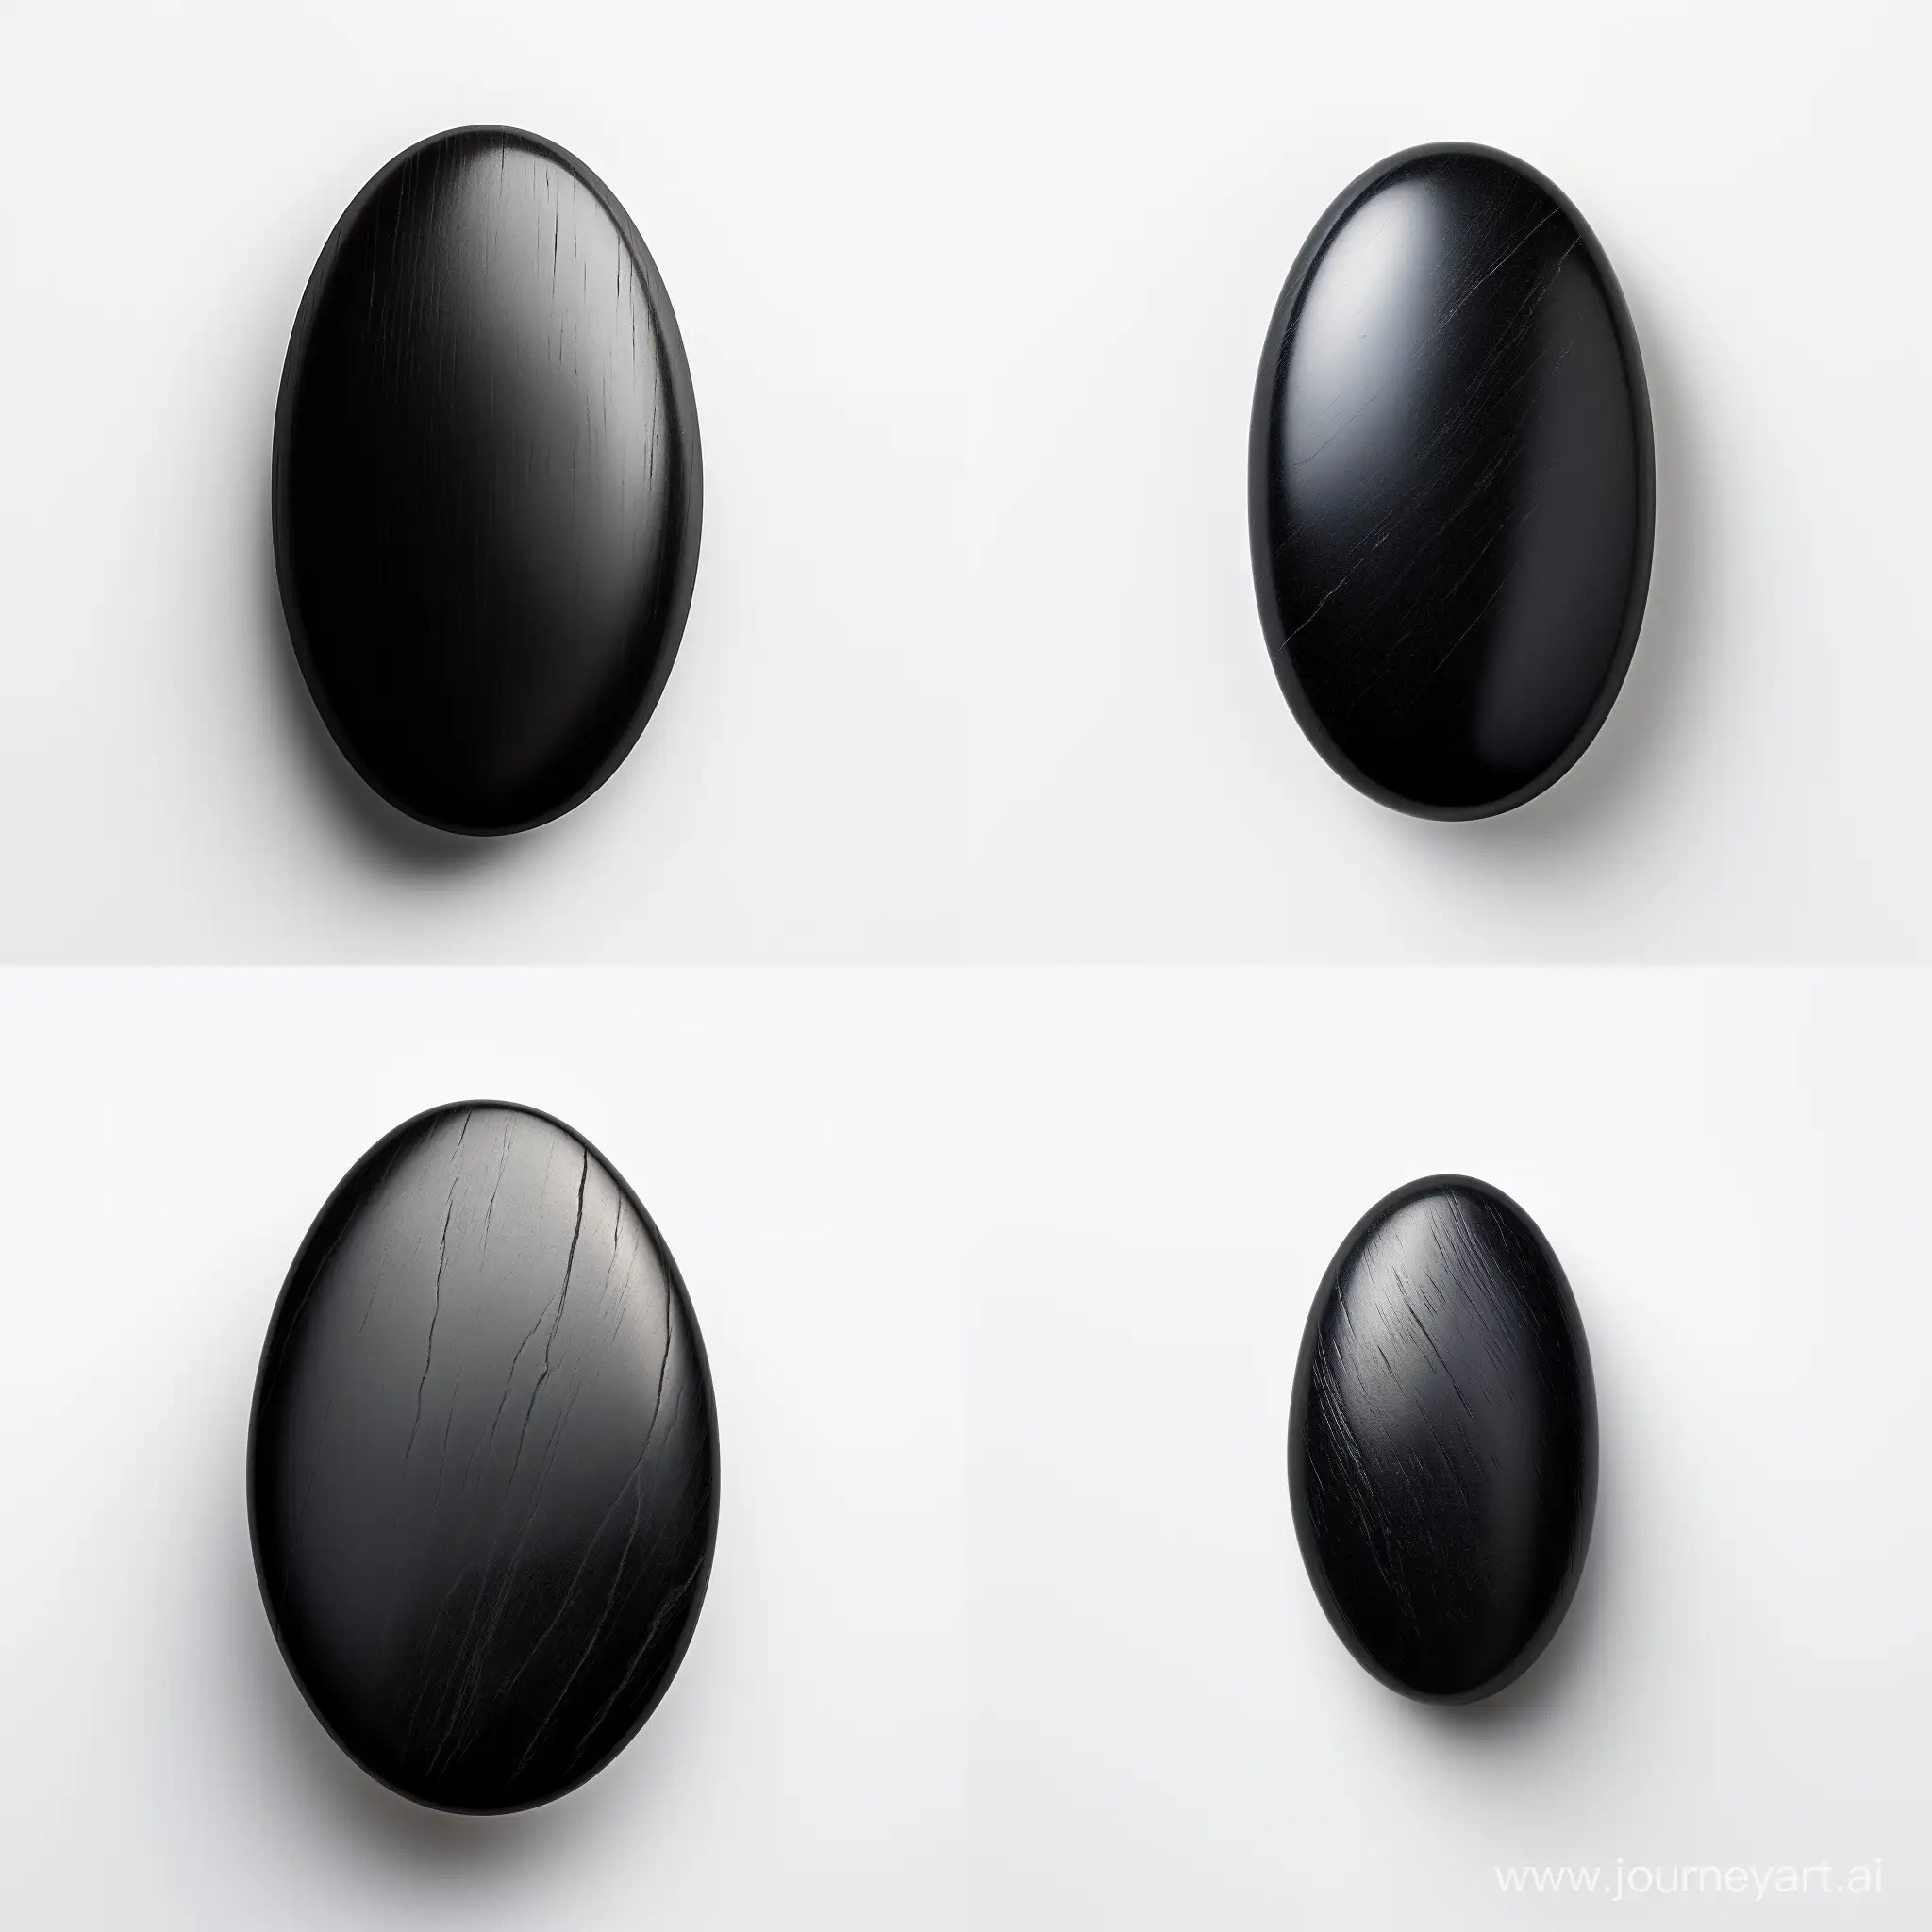 Elegant-Black-Oval-Stone-Cabochon-on-White-Background